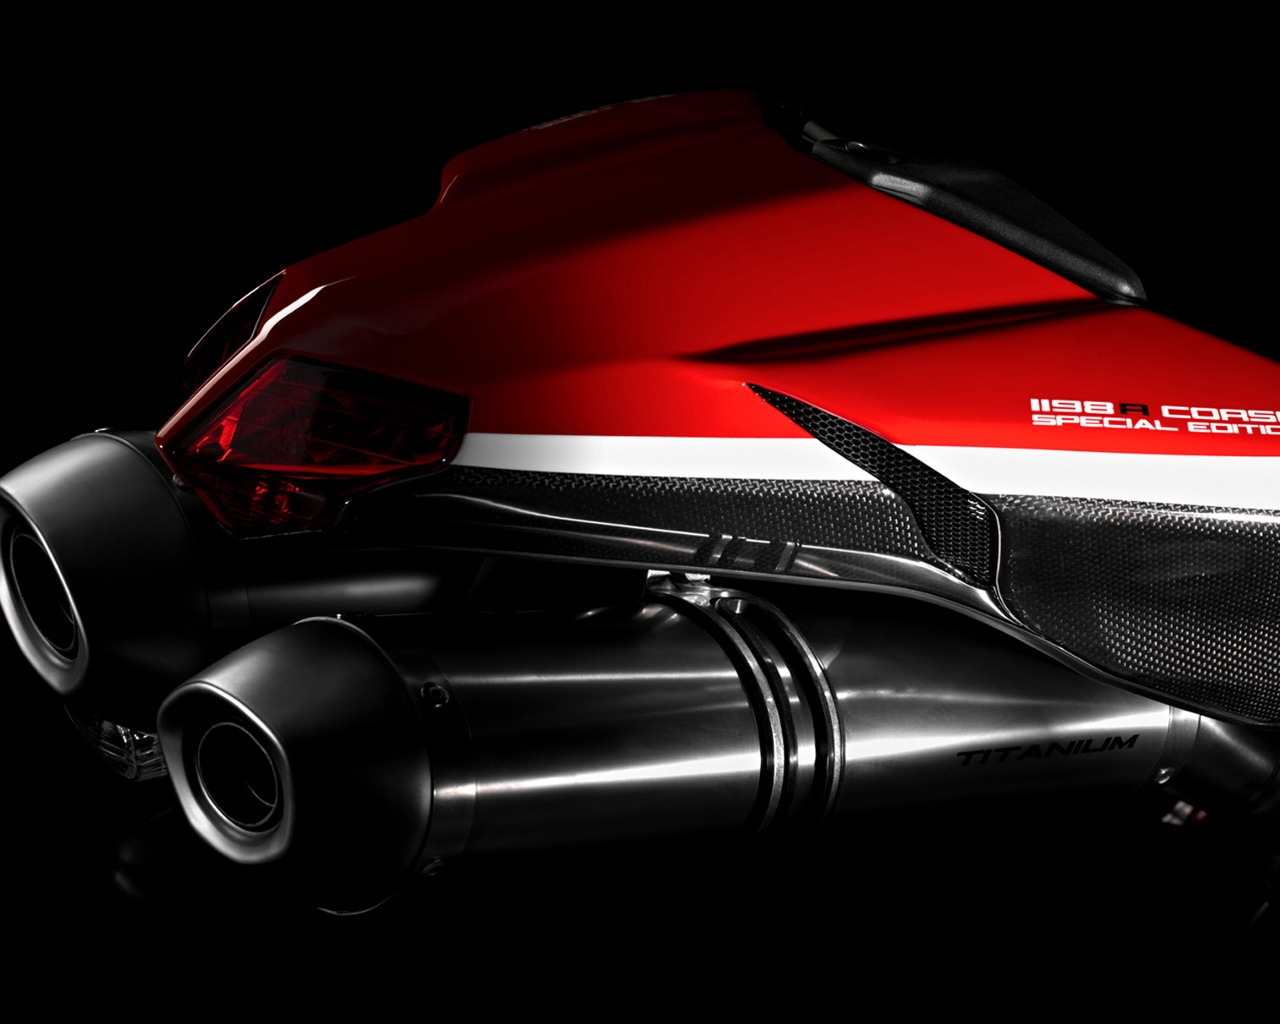 Ducati Superbike-1198-R-Corse Rear for 1280 x 1024 resolution